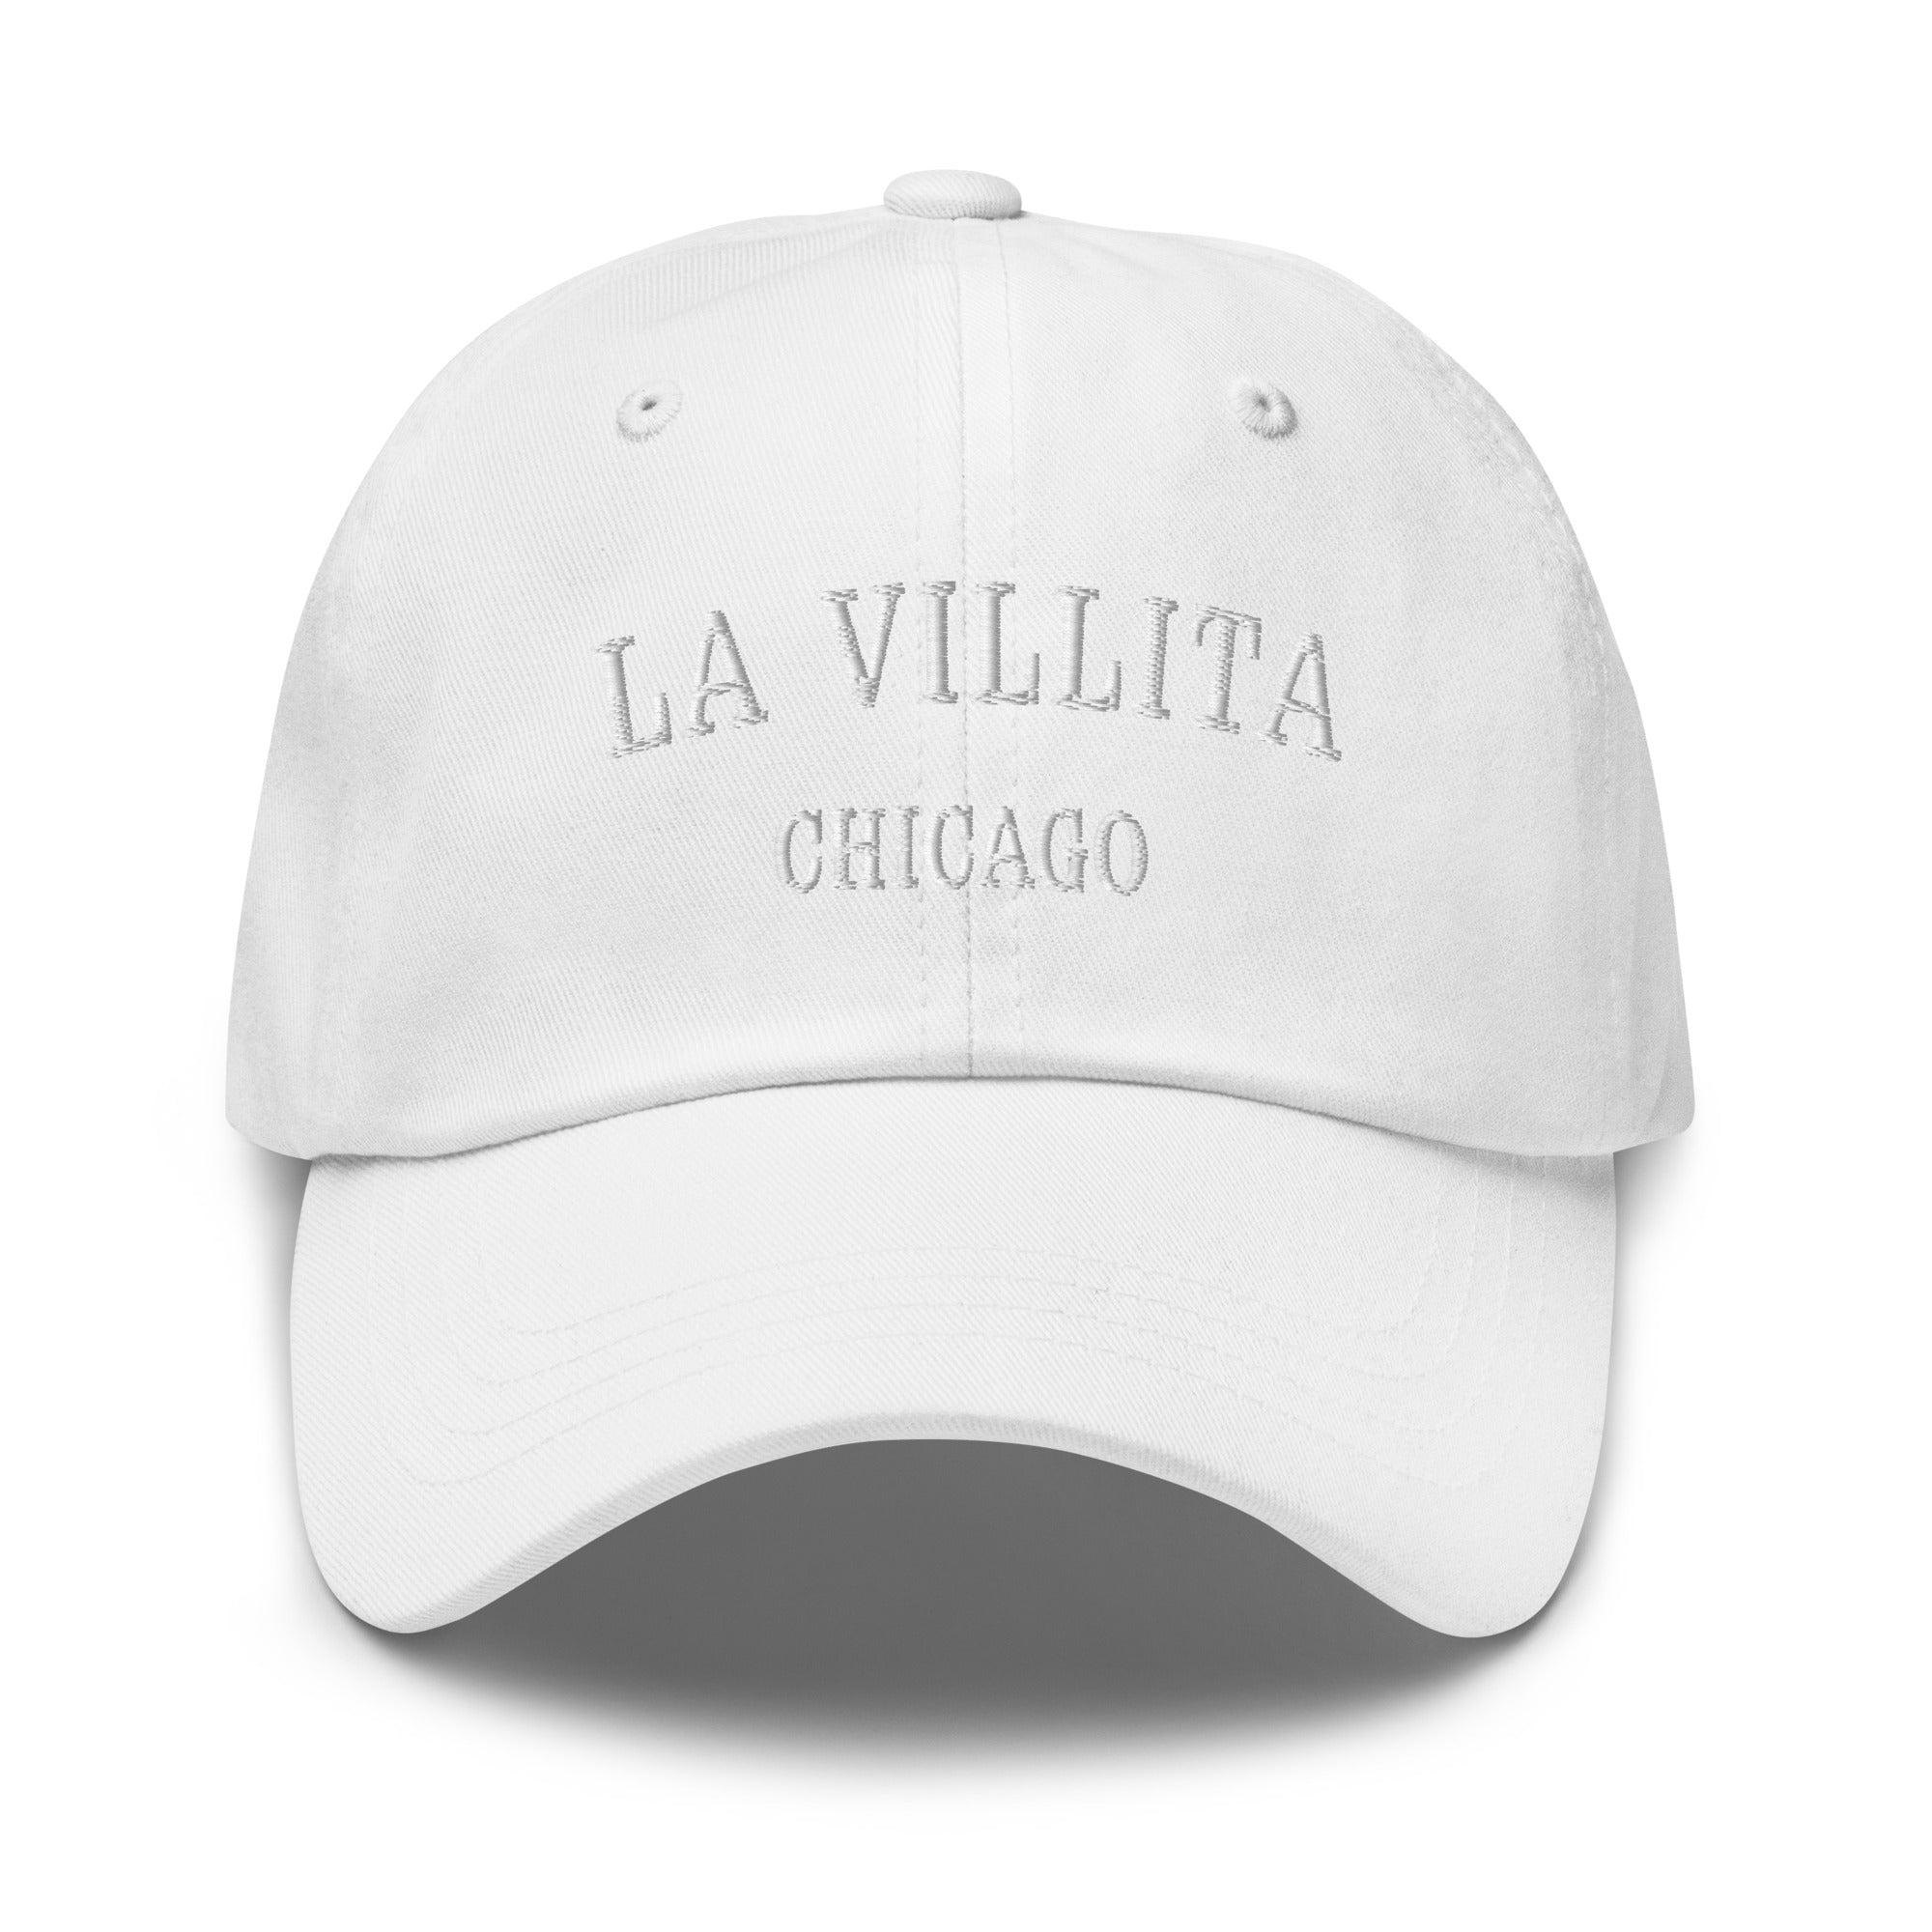 La Villita Chicago Dad Hat